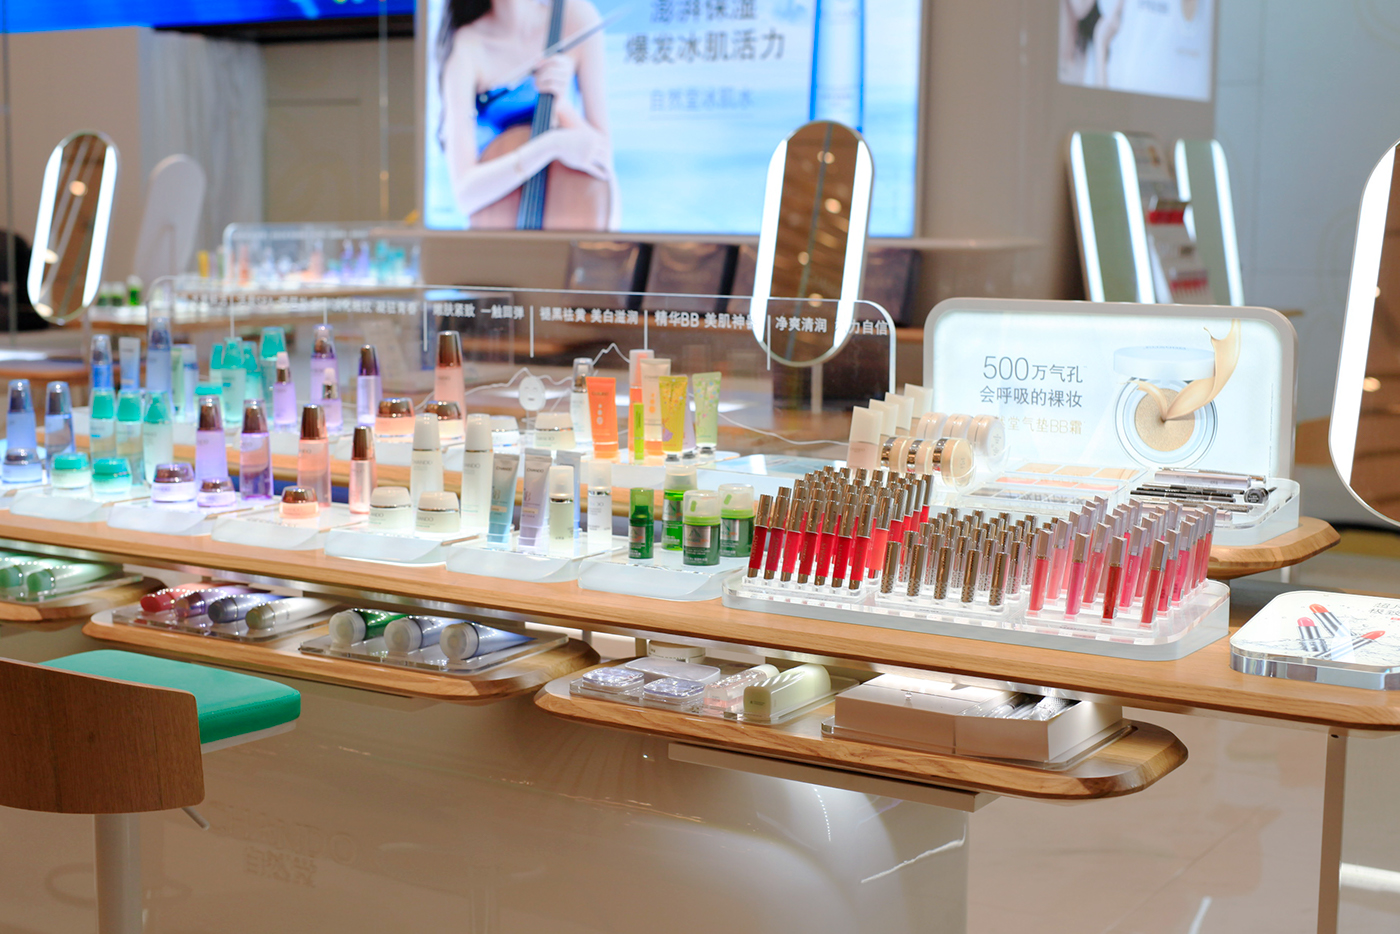 Retail design Cosmetic counter CHANDO